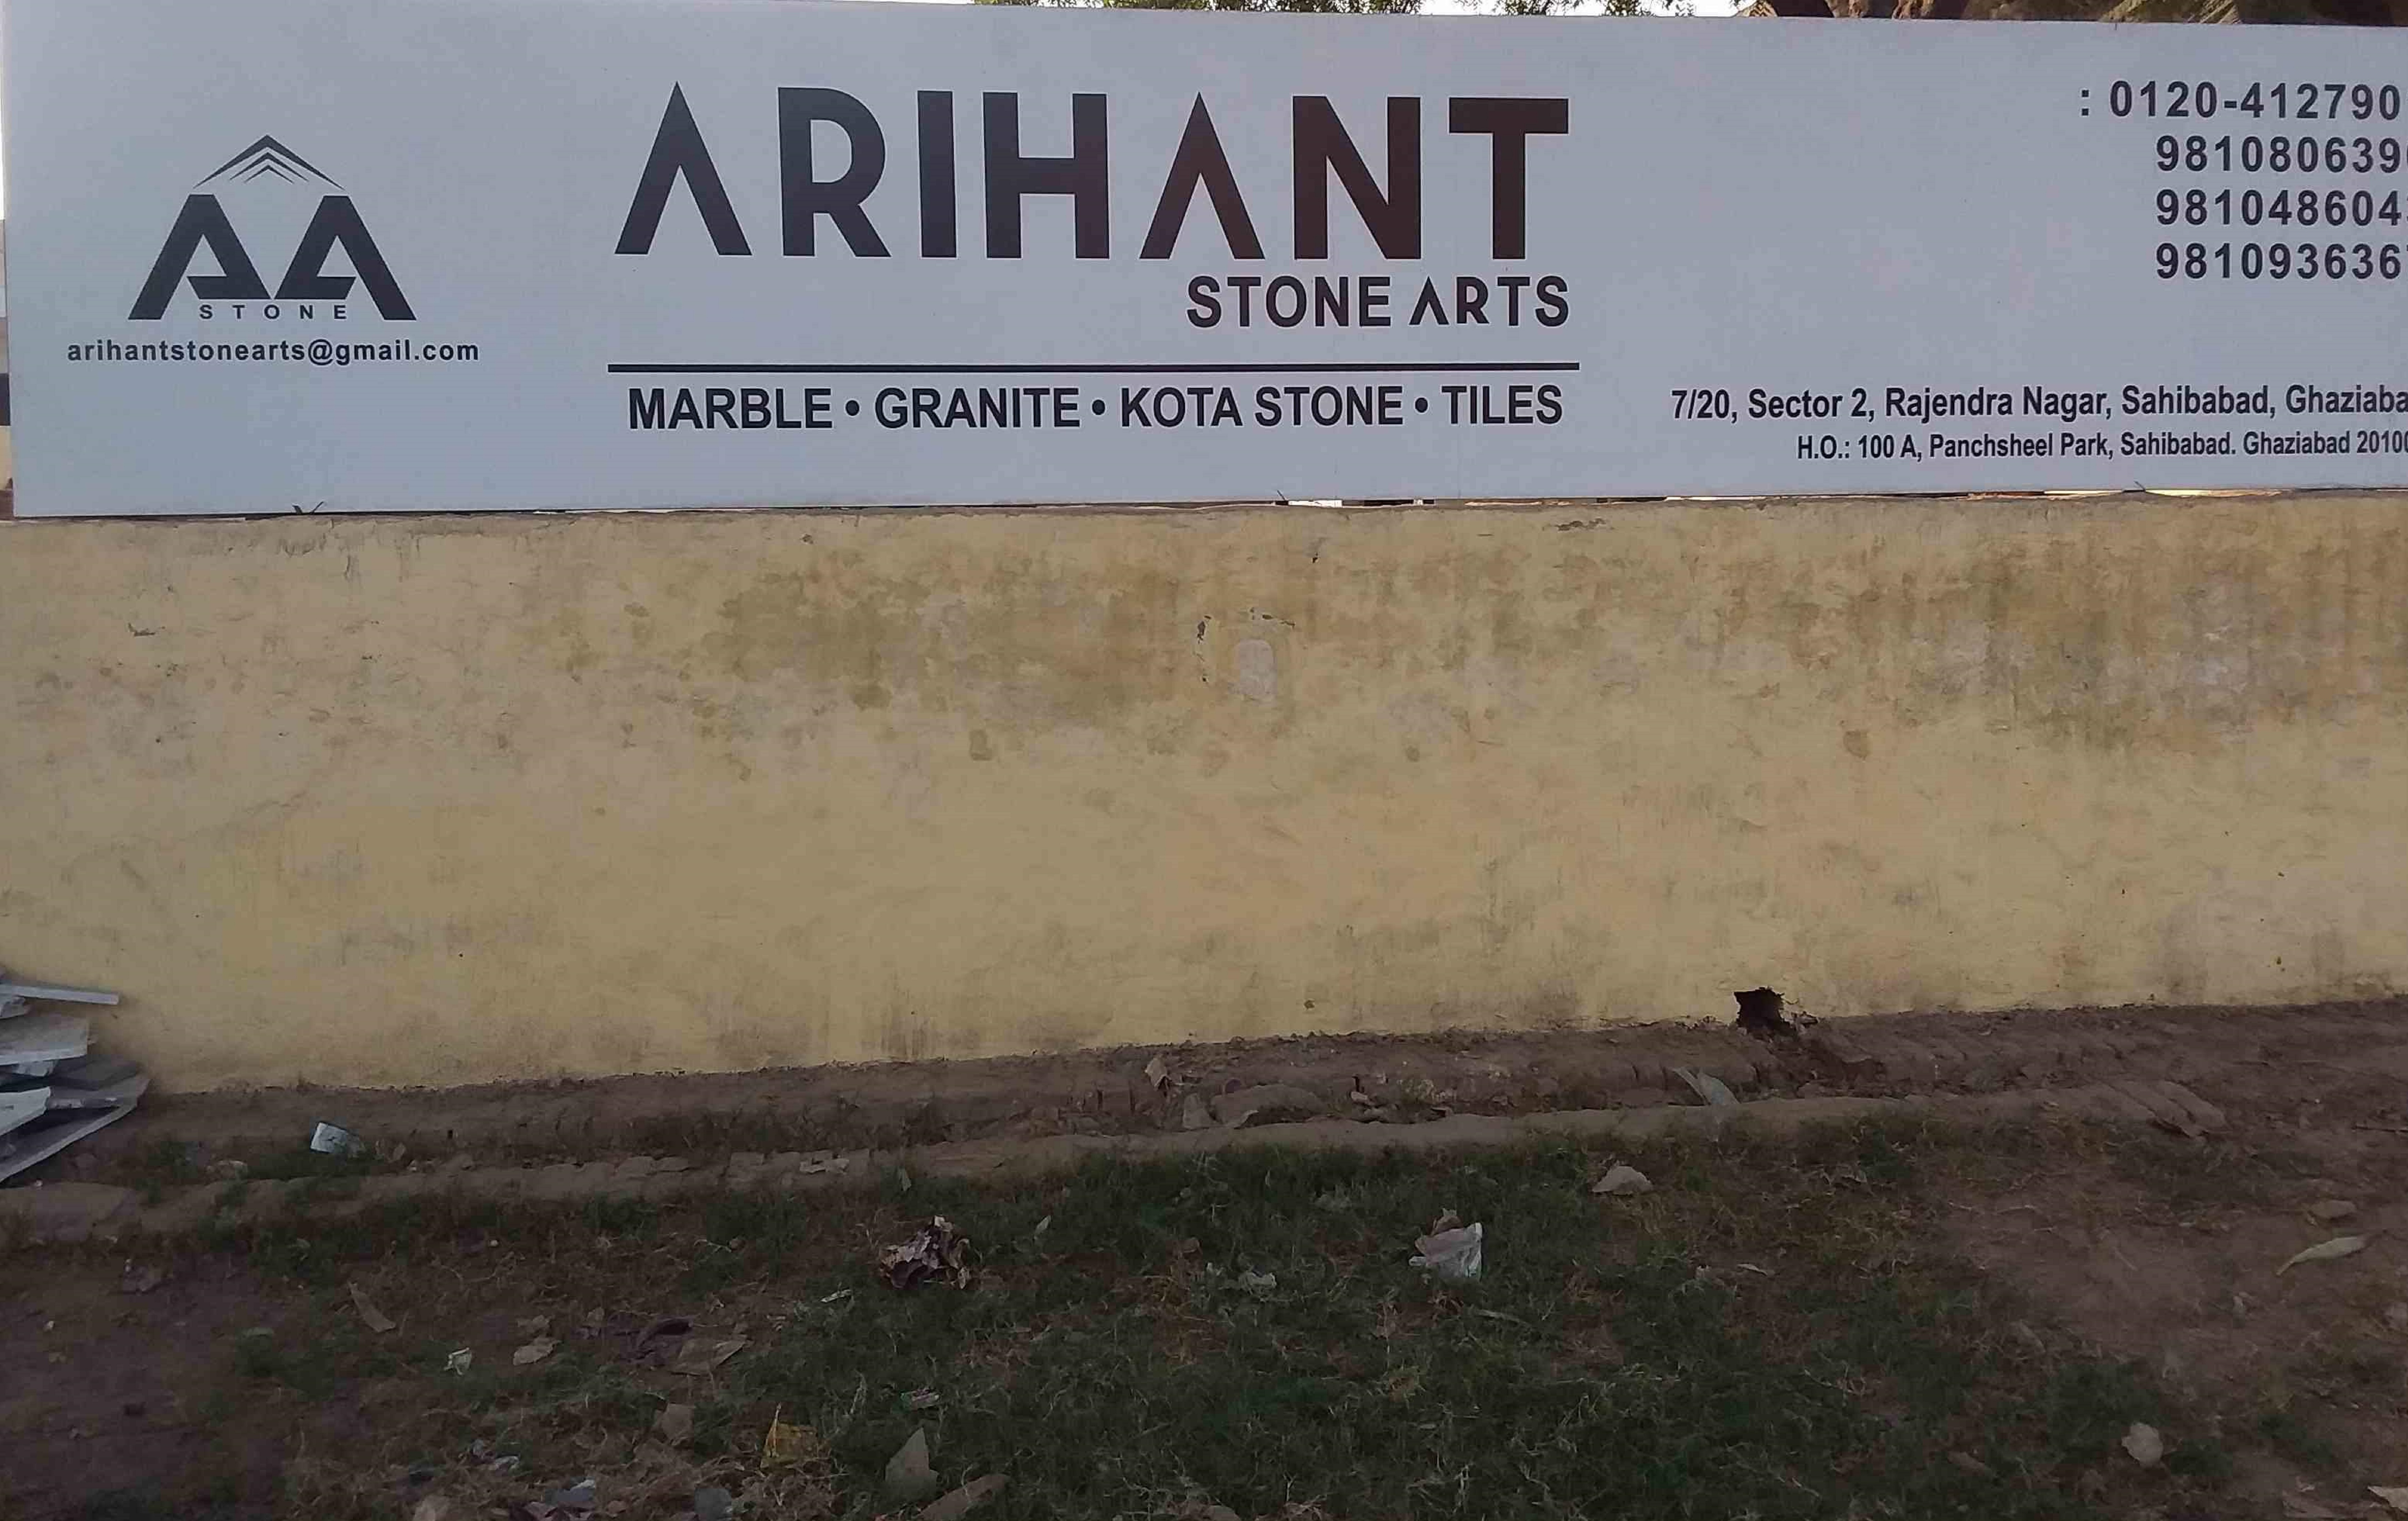 Arihant Stone Arts